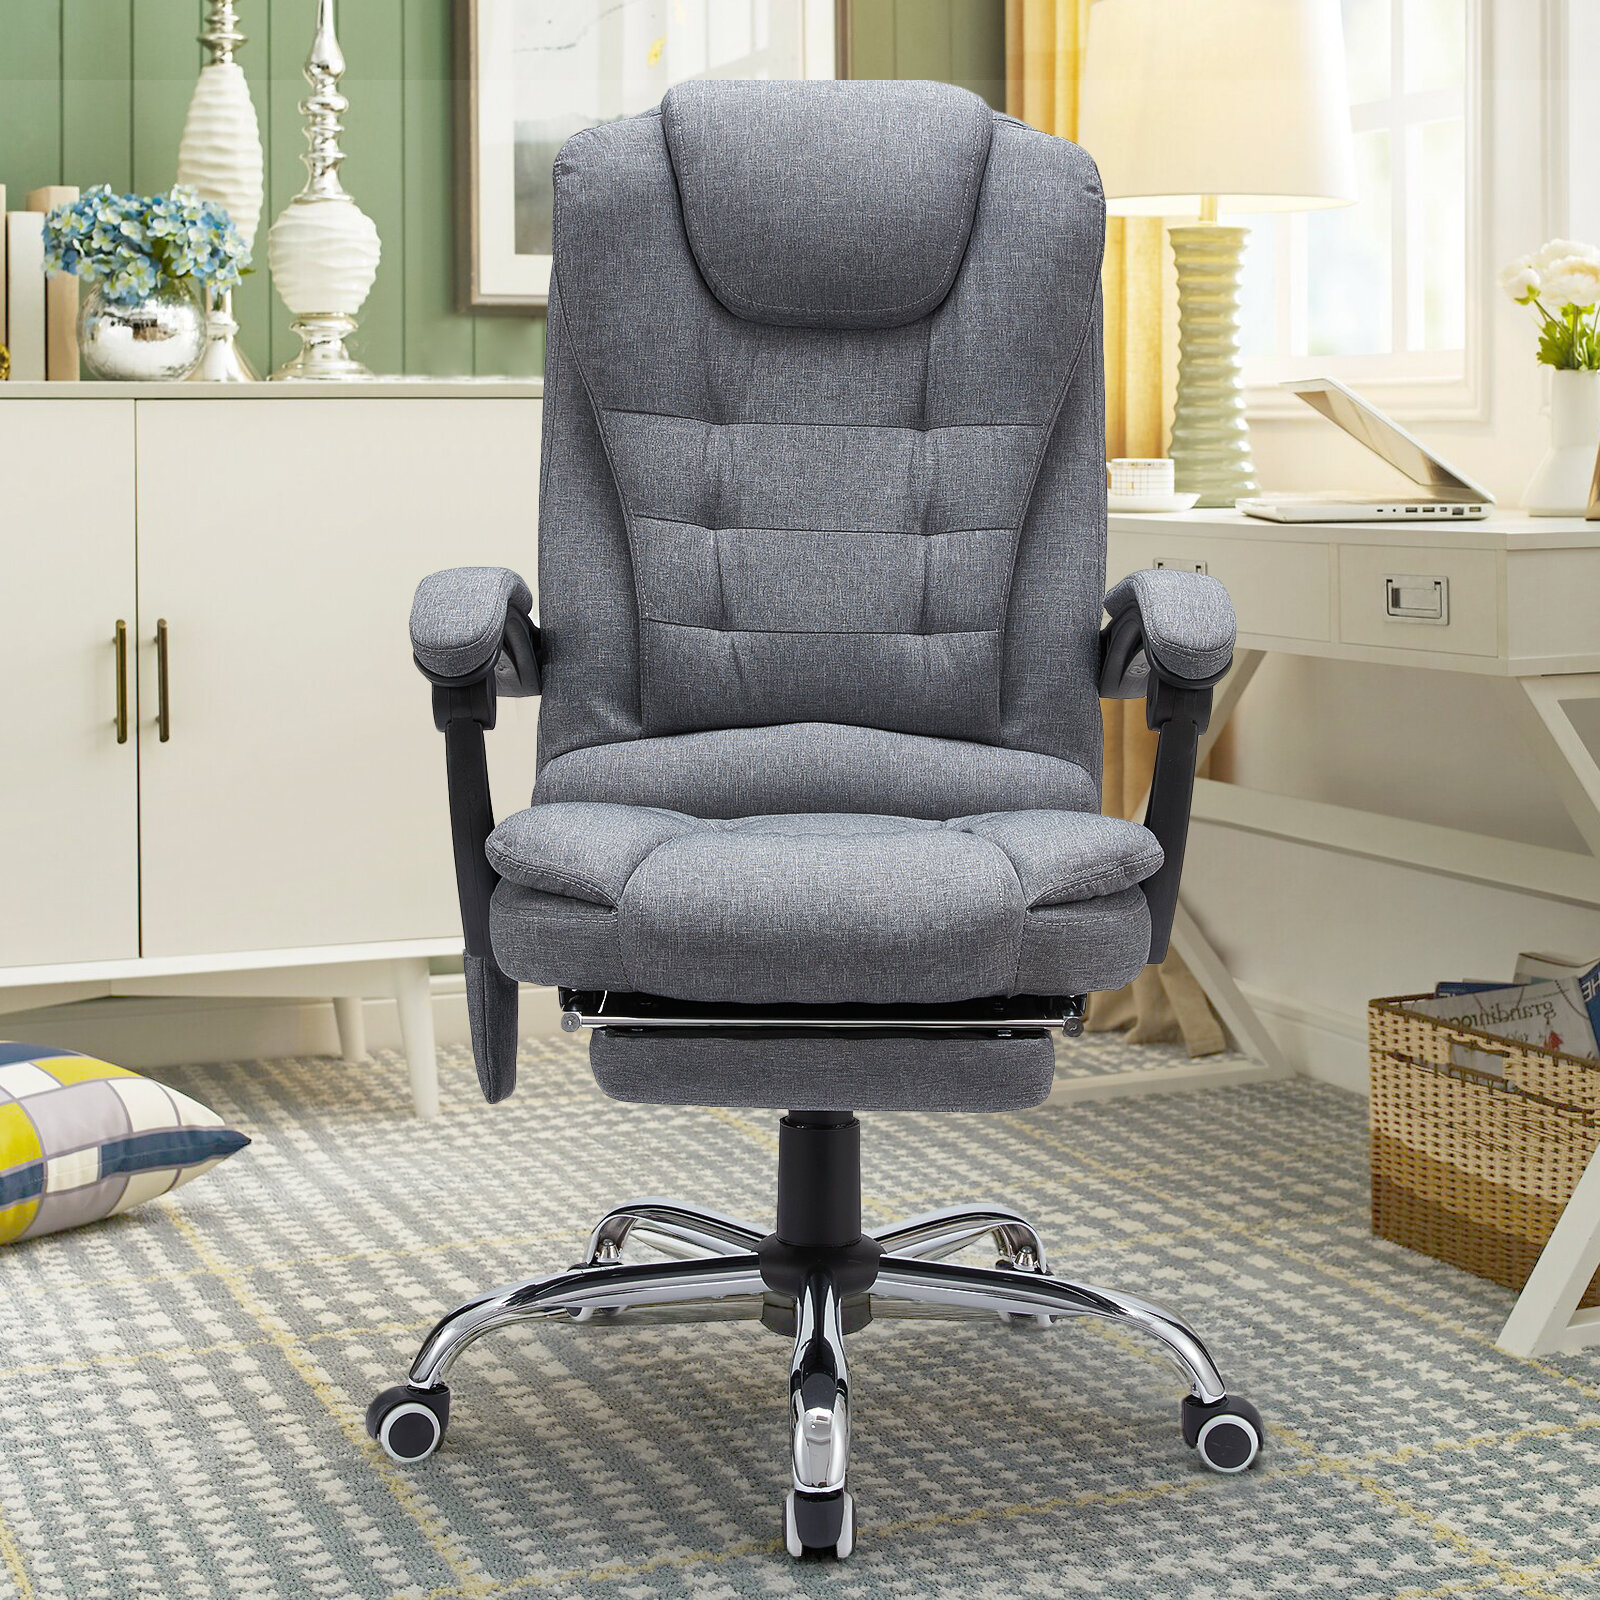 https://assets.wfcdn.com/im/05299295/compr-r85/1570/157030438/nola-ergonomic-heated-massage-executive-chair.jpg